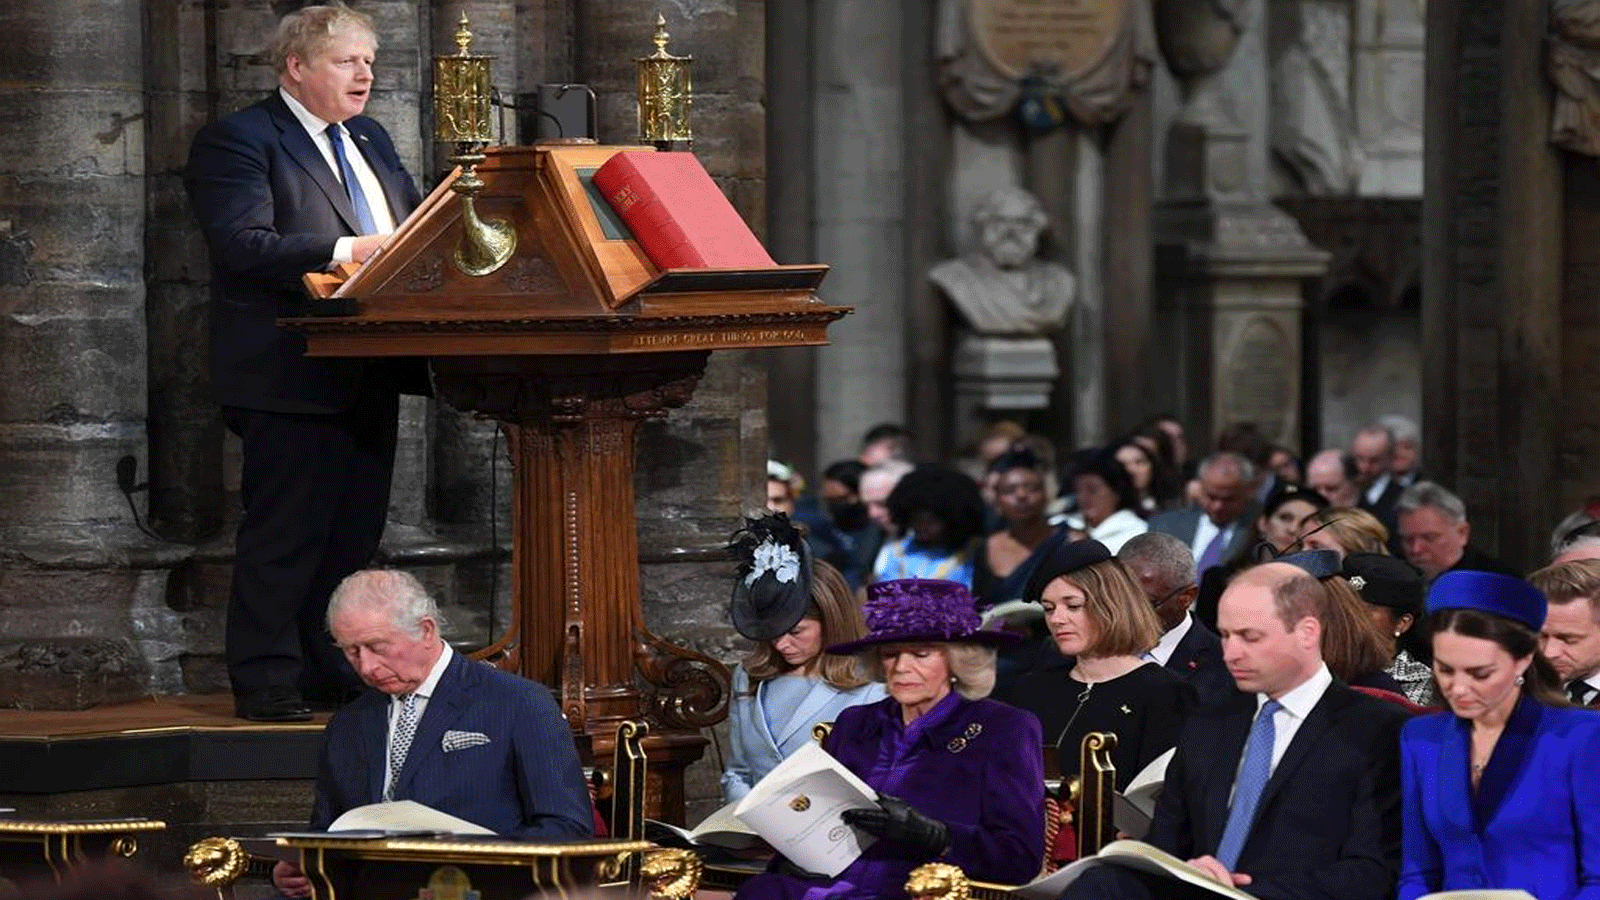 الأمير تشارلز وحشد من الحضور في الاحتفال يوم الكونولث